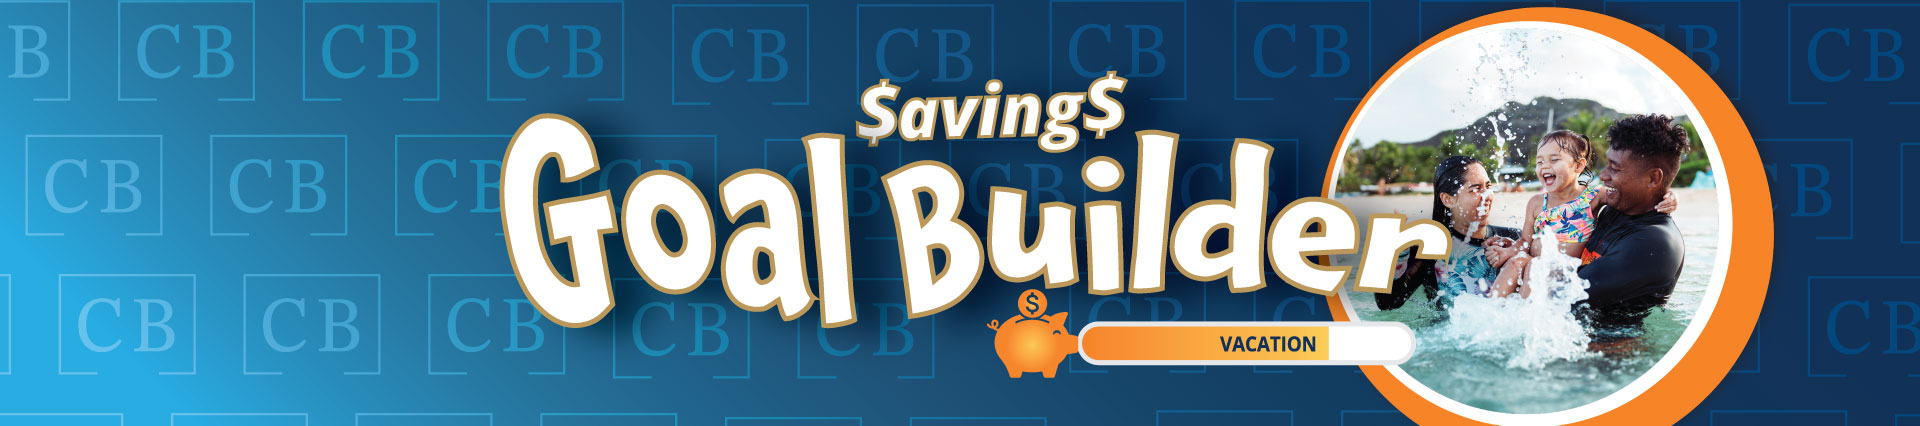 Savings Goal Builder by Central Bank Utah